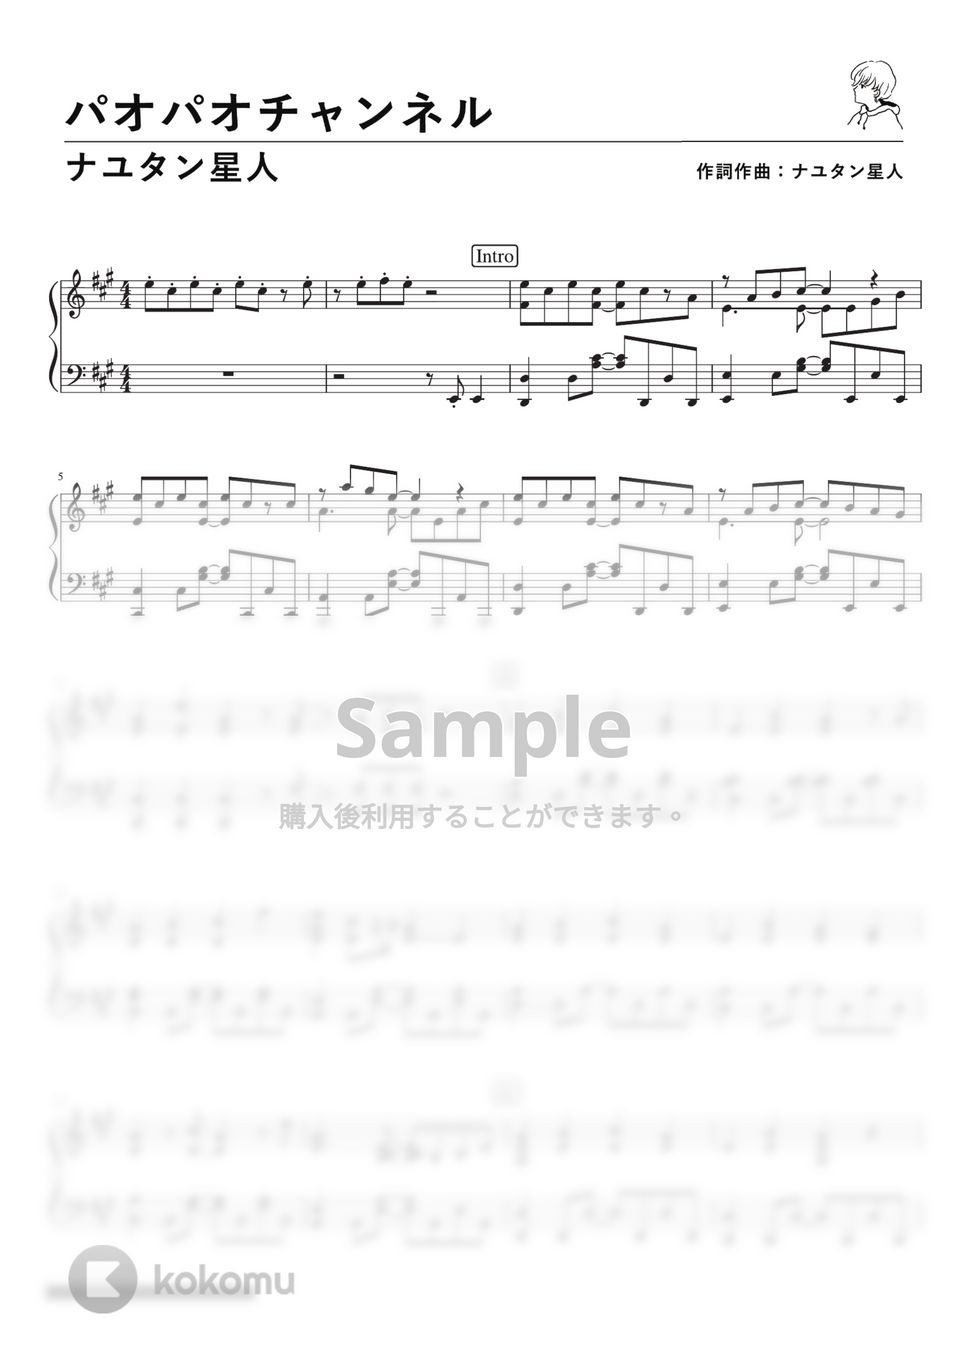 ナユタン星人 - パオパオチャンネル (Piano Solo) by 深根 / Fukane